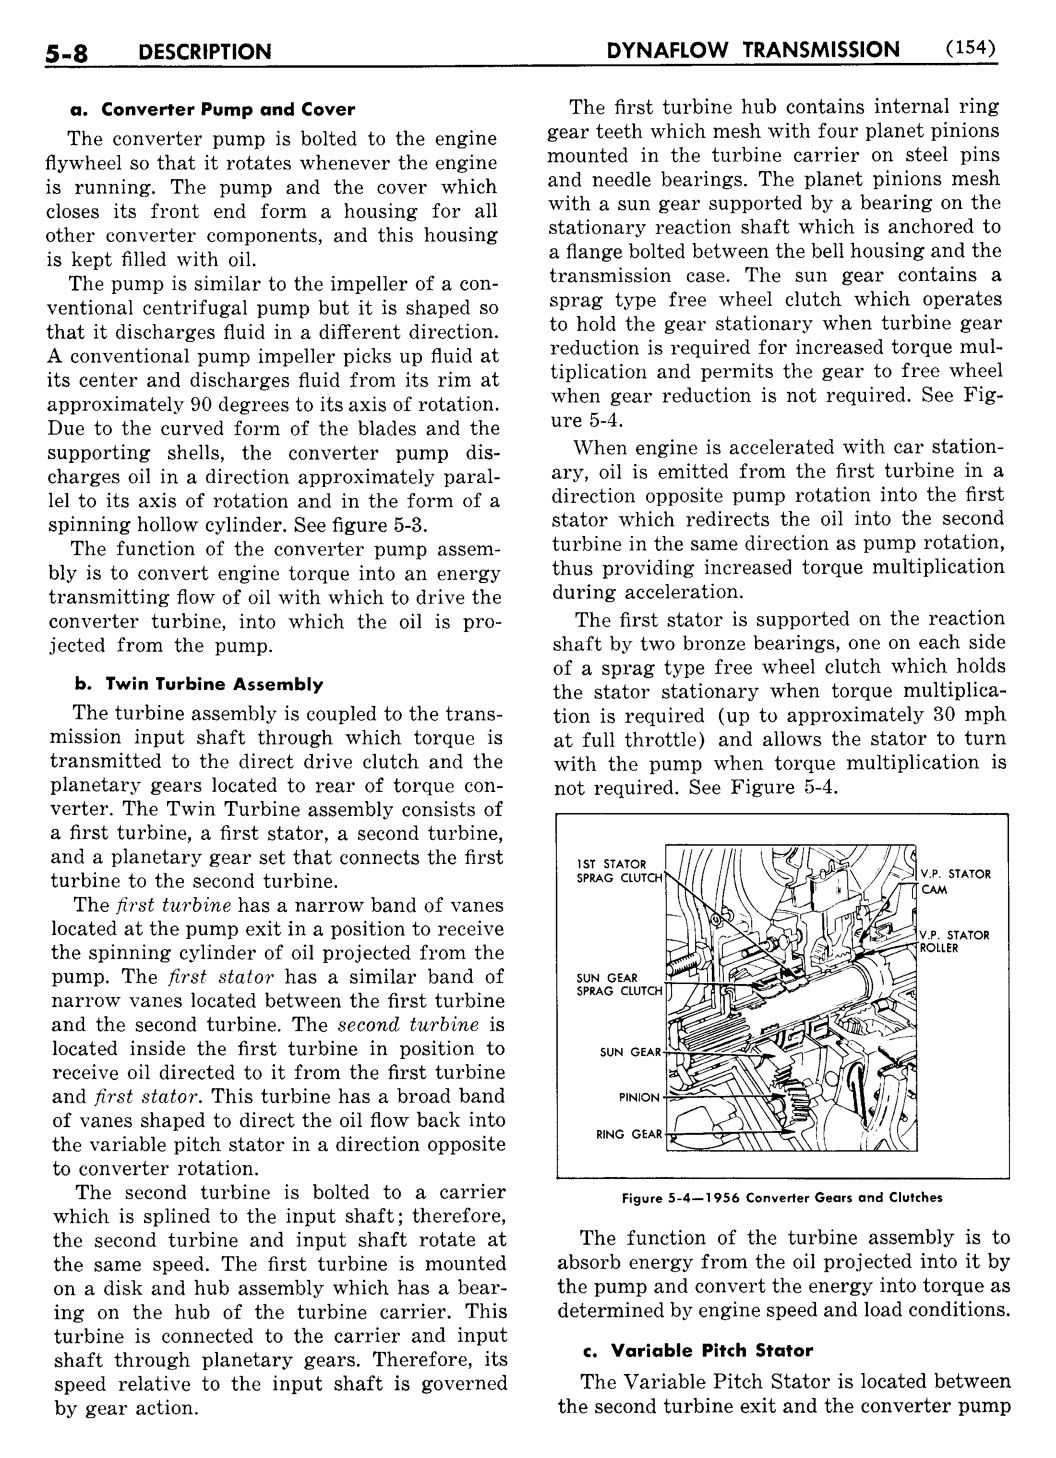 n_06 1956 Buick Shop Manual - Dynaflow-008-008.jpg